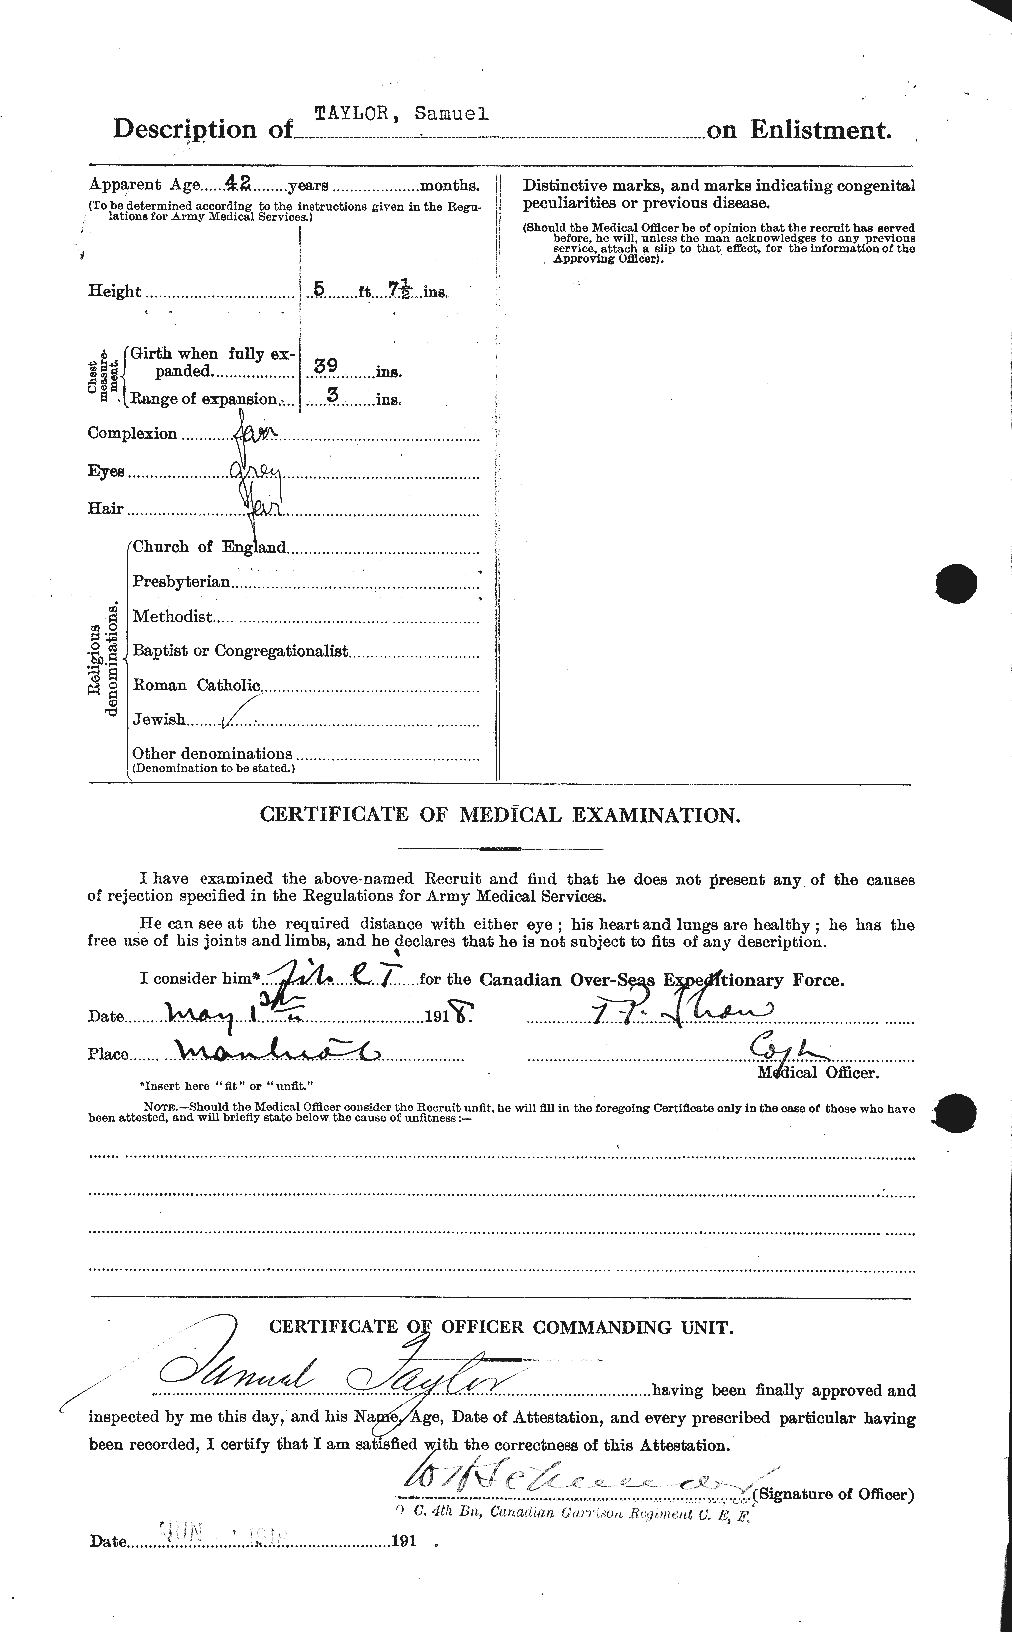 Dossiers du Personnel de la Première Guerre mondiale - CEC 627865b